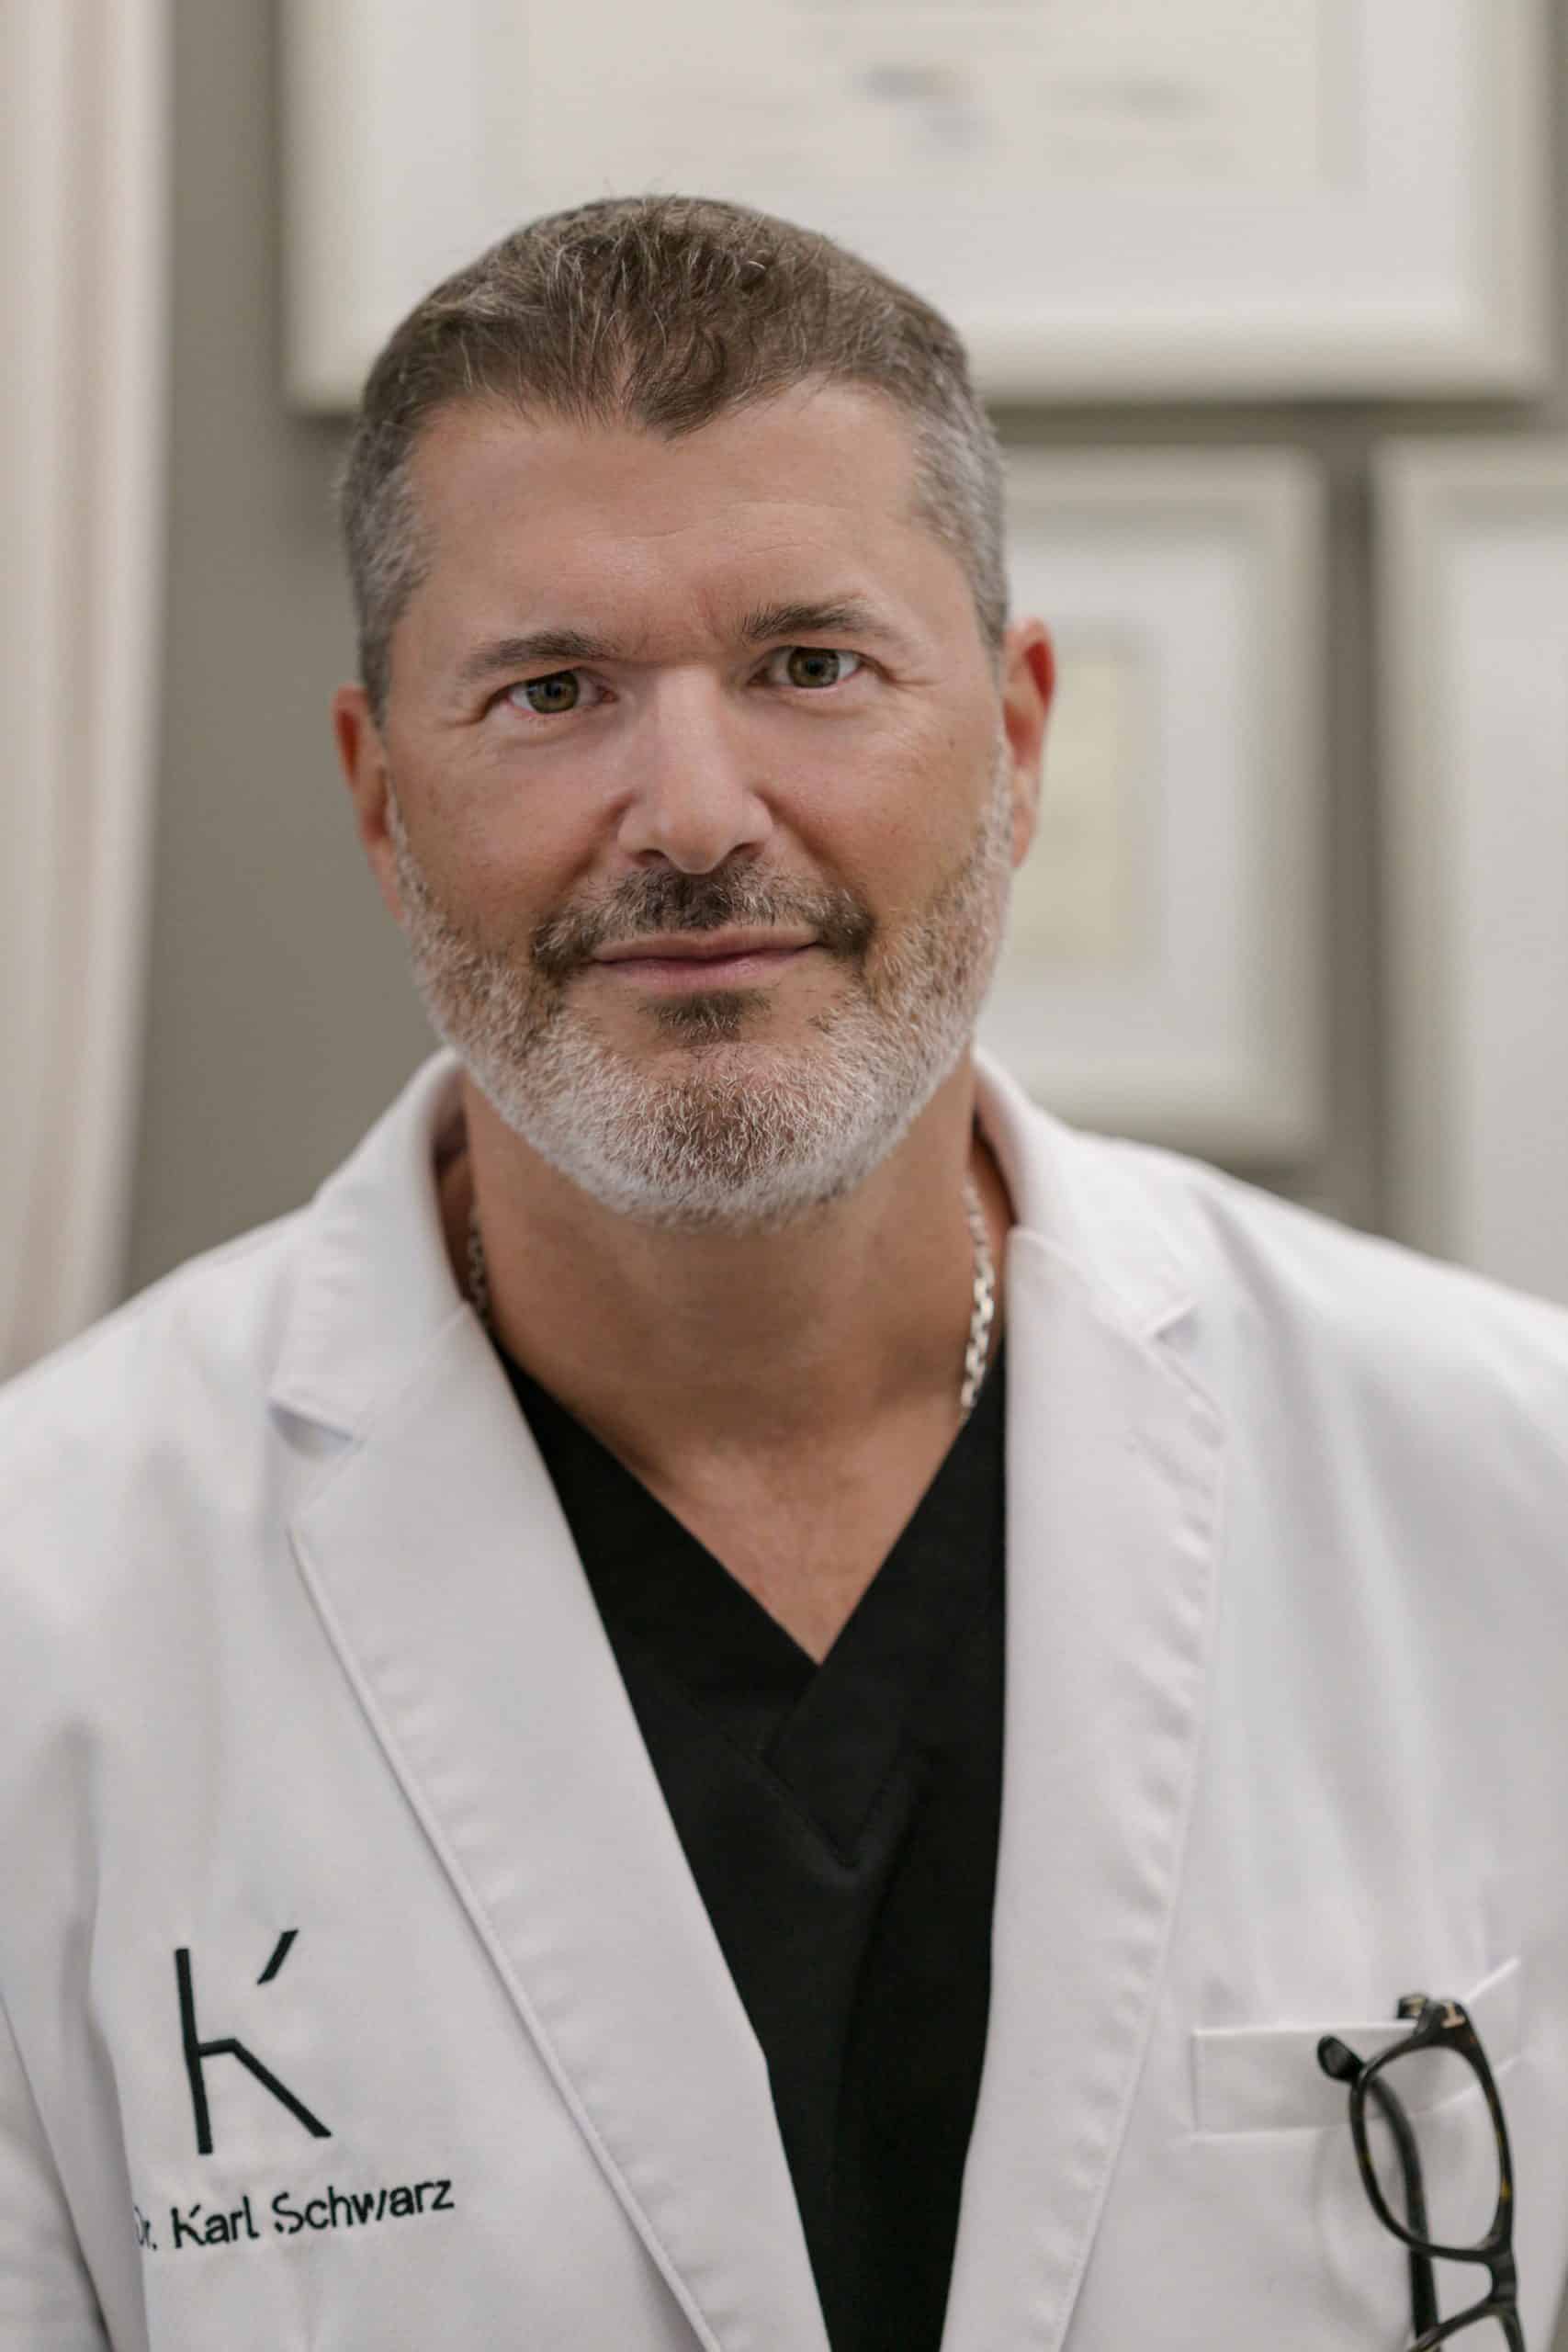 Dr Karl Schwarz